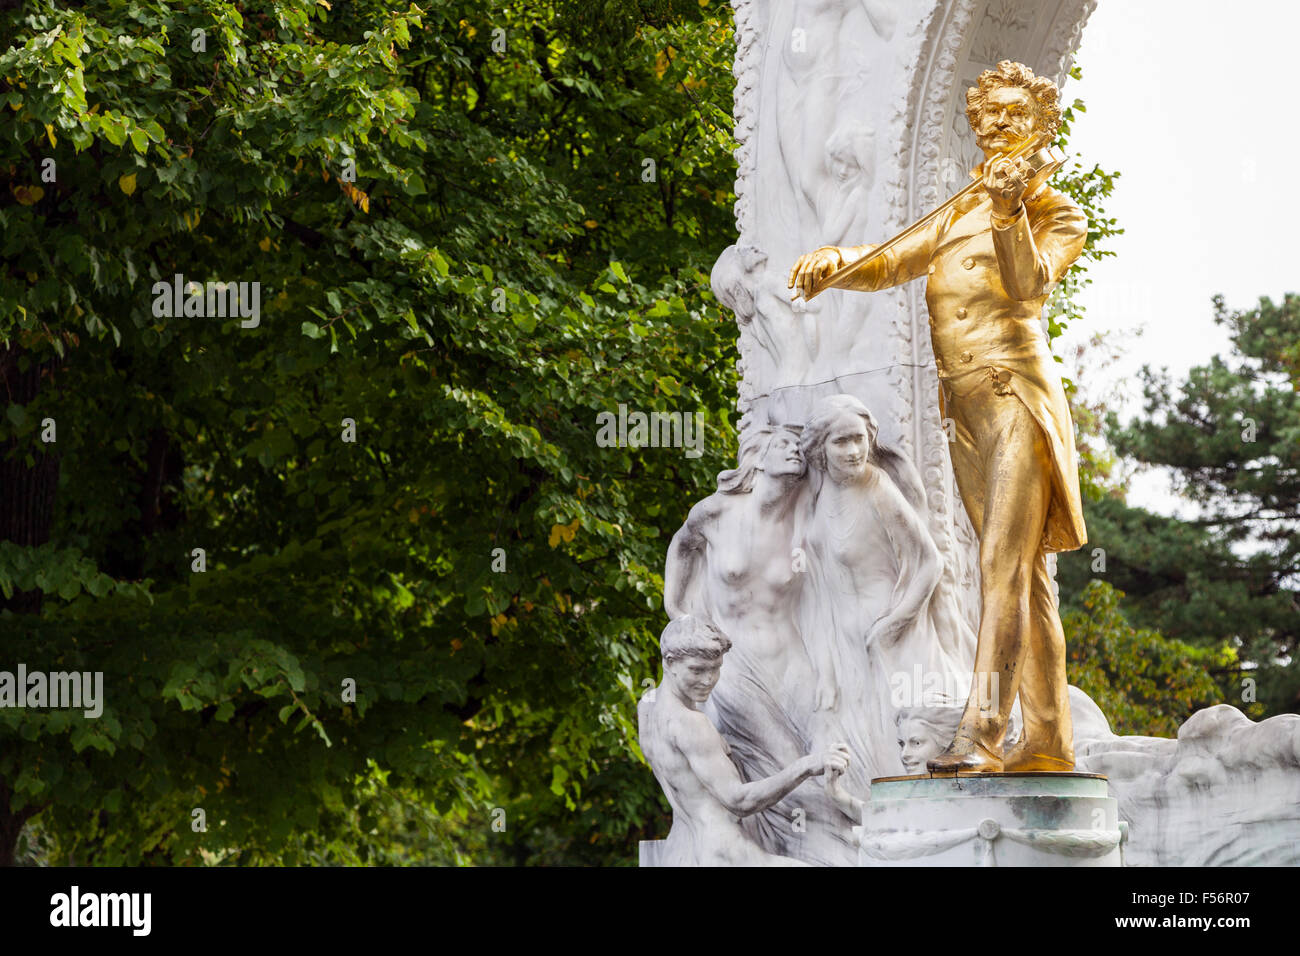 travel to Vienna city - gilded bronze statue 'Waltz King' Johann Strauss son in Stadtpark (City Park), Vienna, Austria Stock Photo